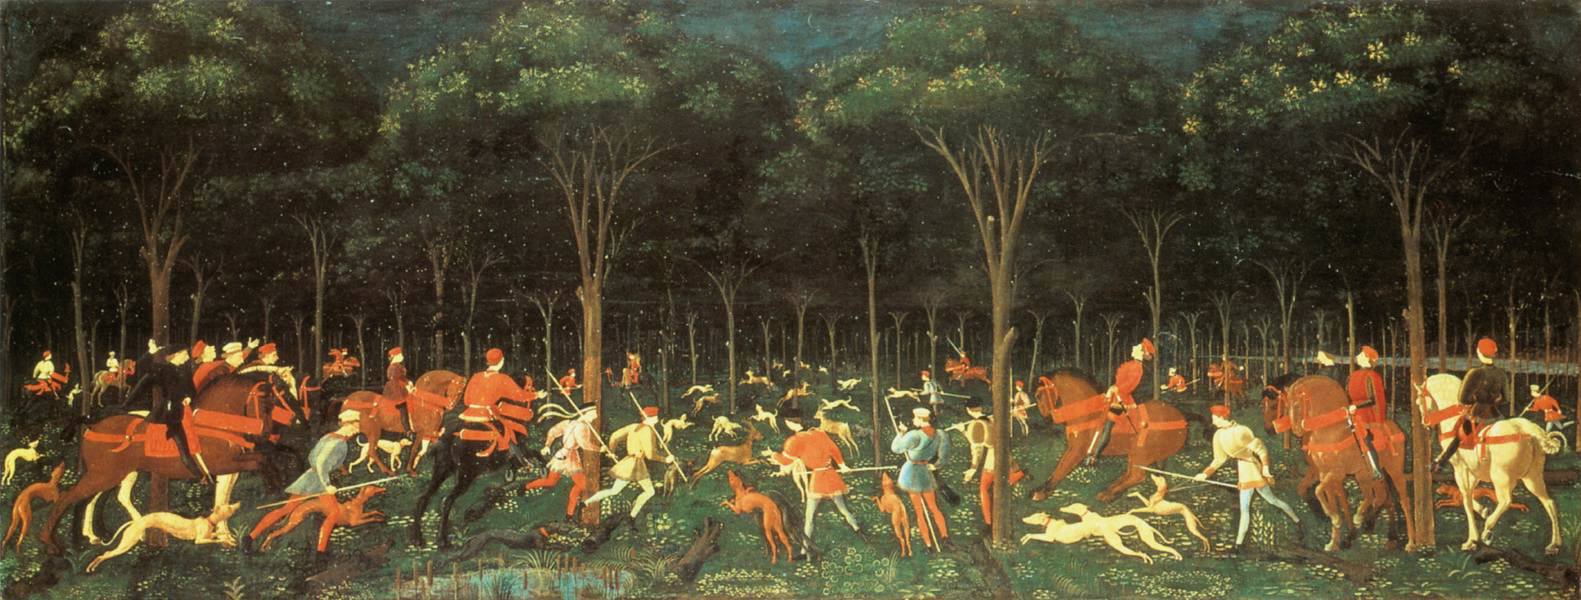 La Caccia nella Foresta  by Paolo Uccello - c. 1470 - 65 cm × 165 cm 